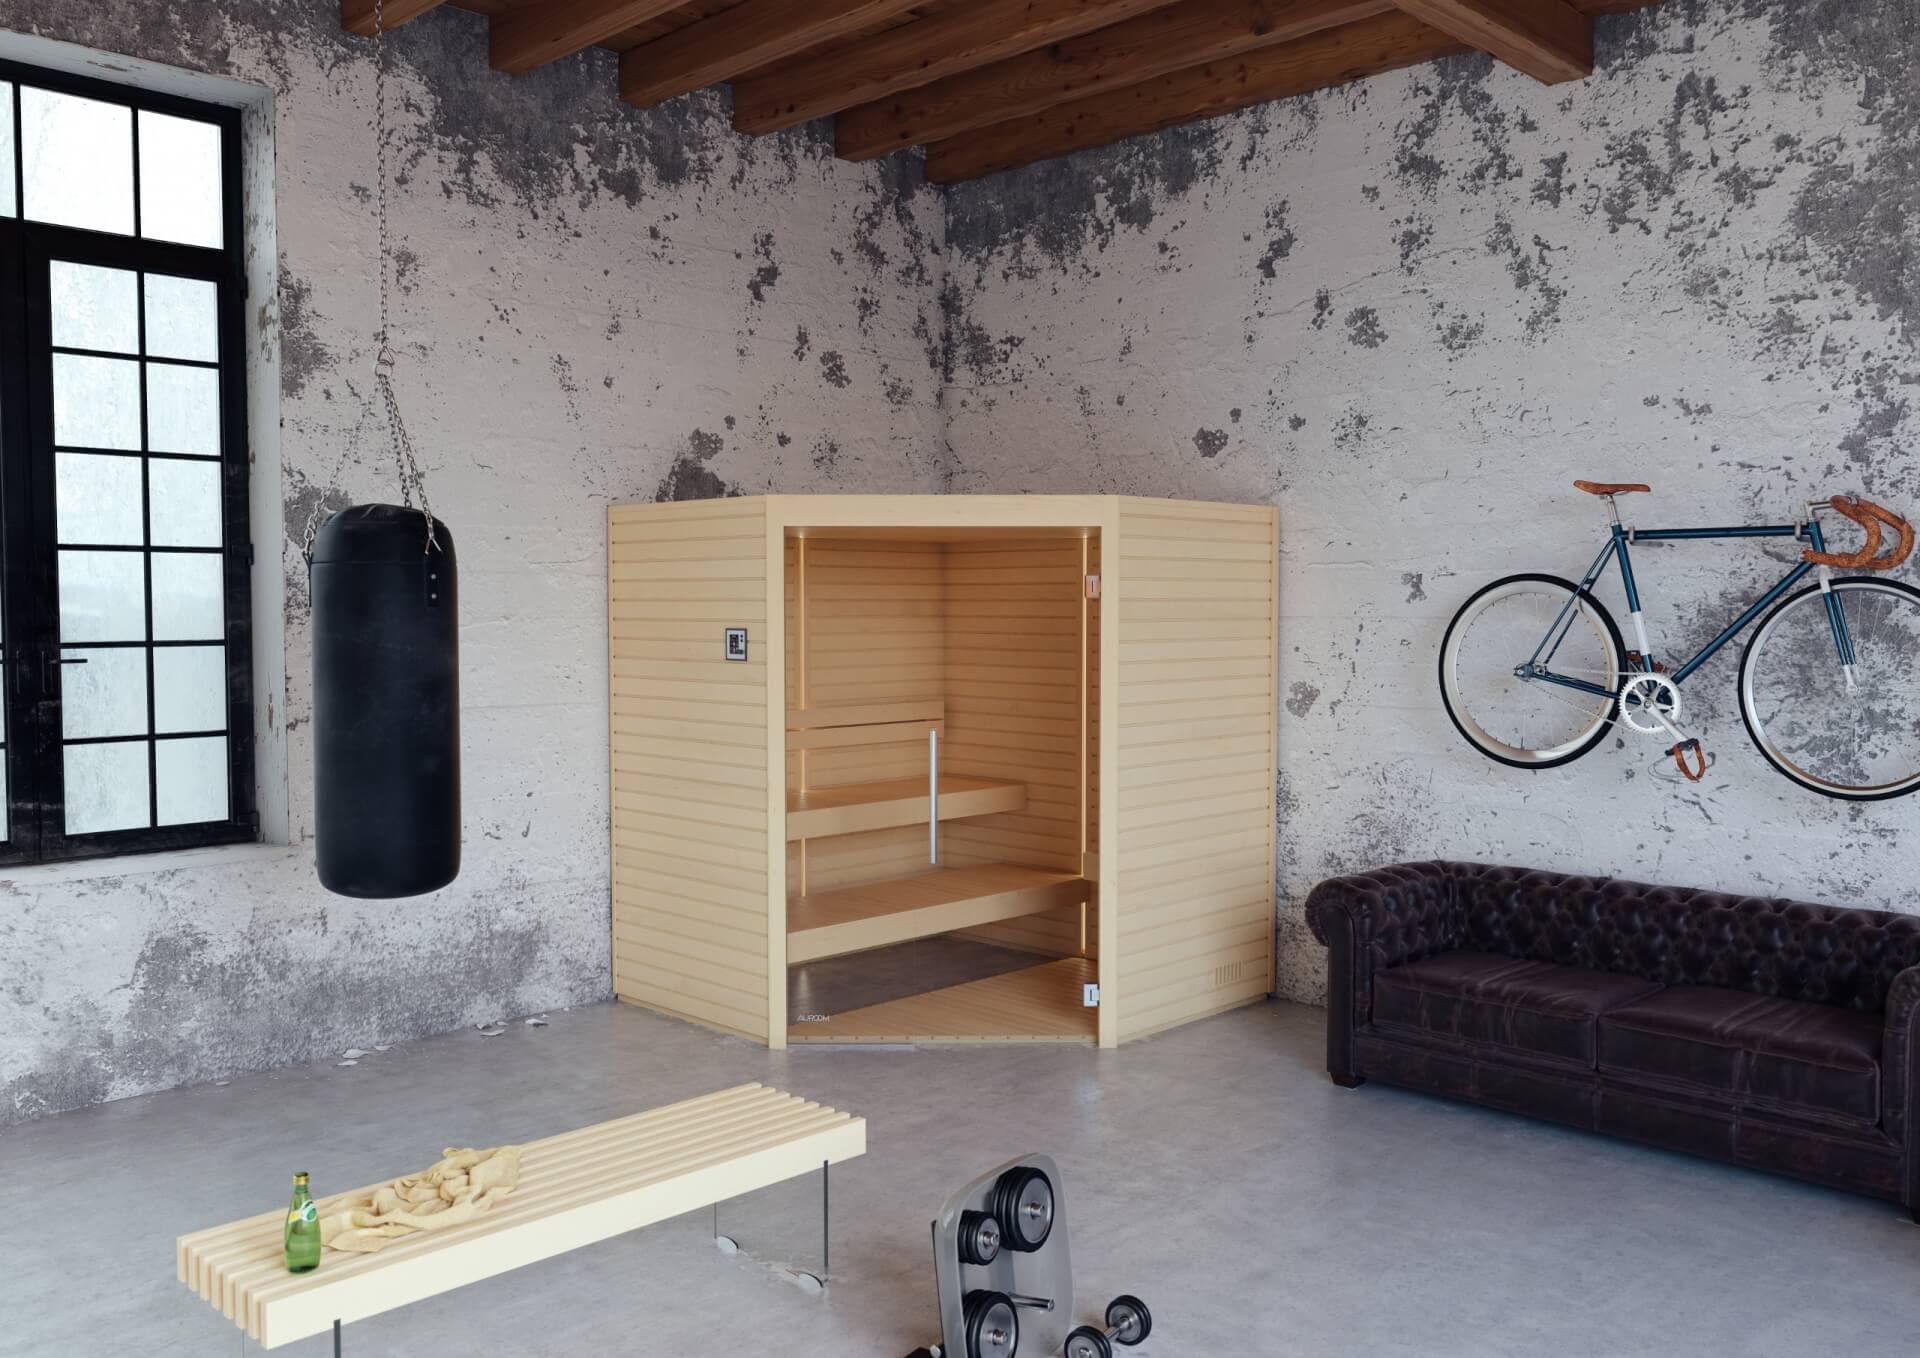 Sauna intérieur Varia vendu par Aqua éruptions, mis en situation dans une salle de sport